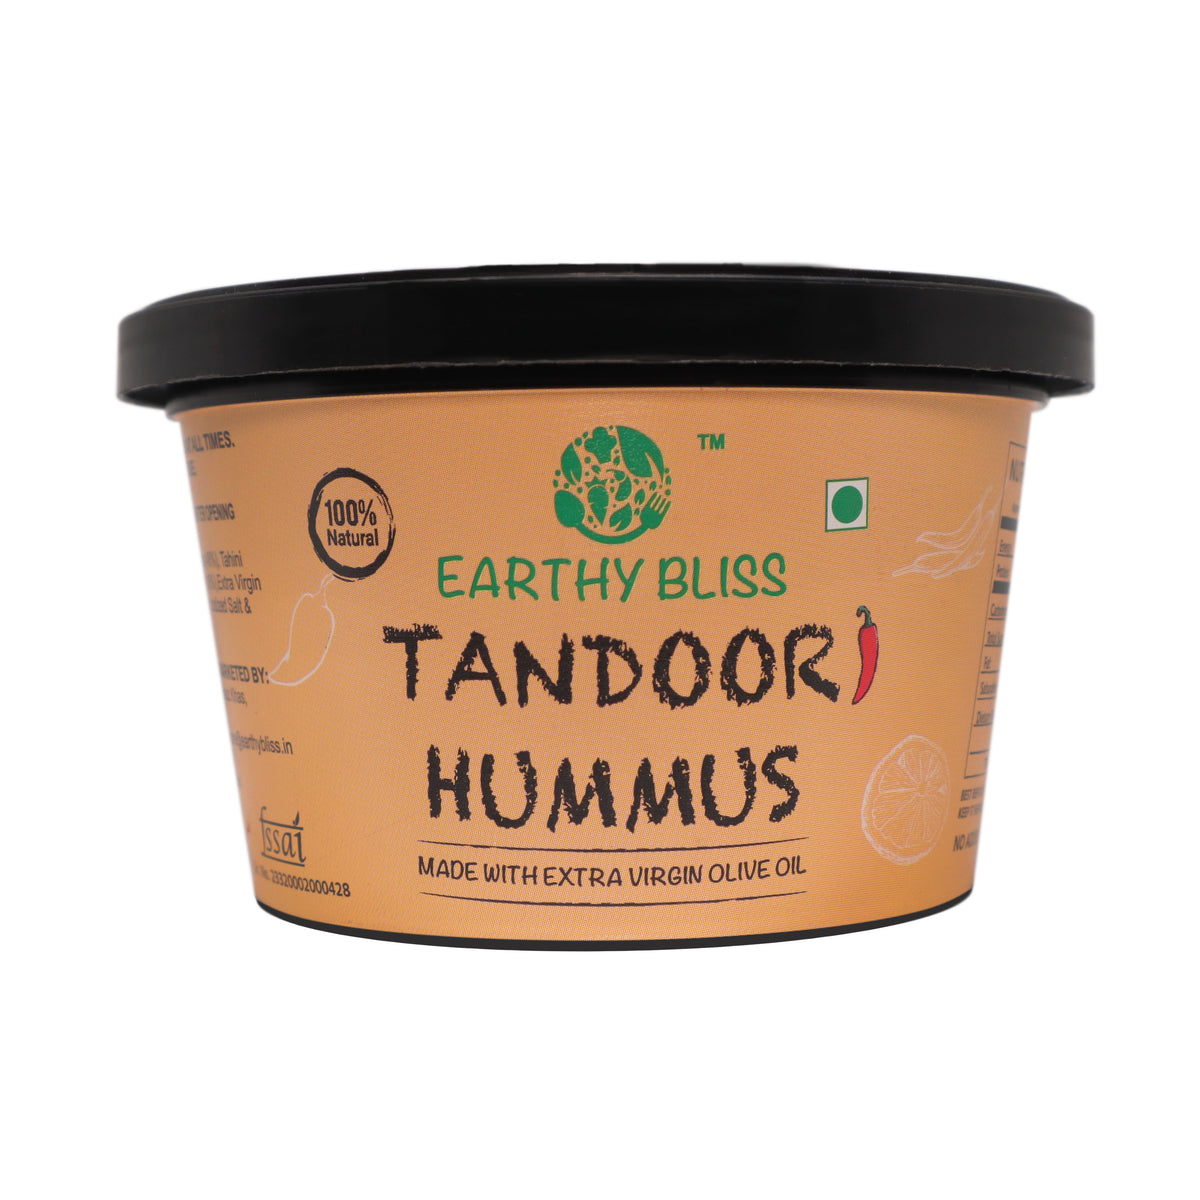 Tandoori Hummus - Earthy Bliss